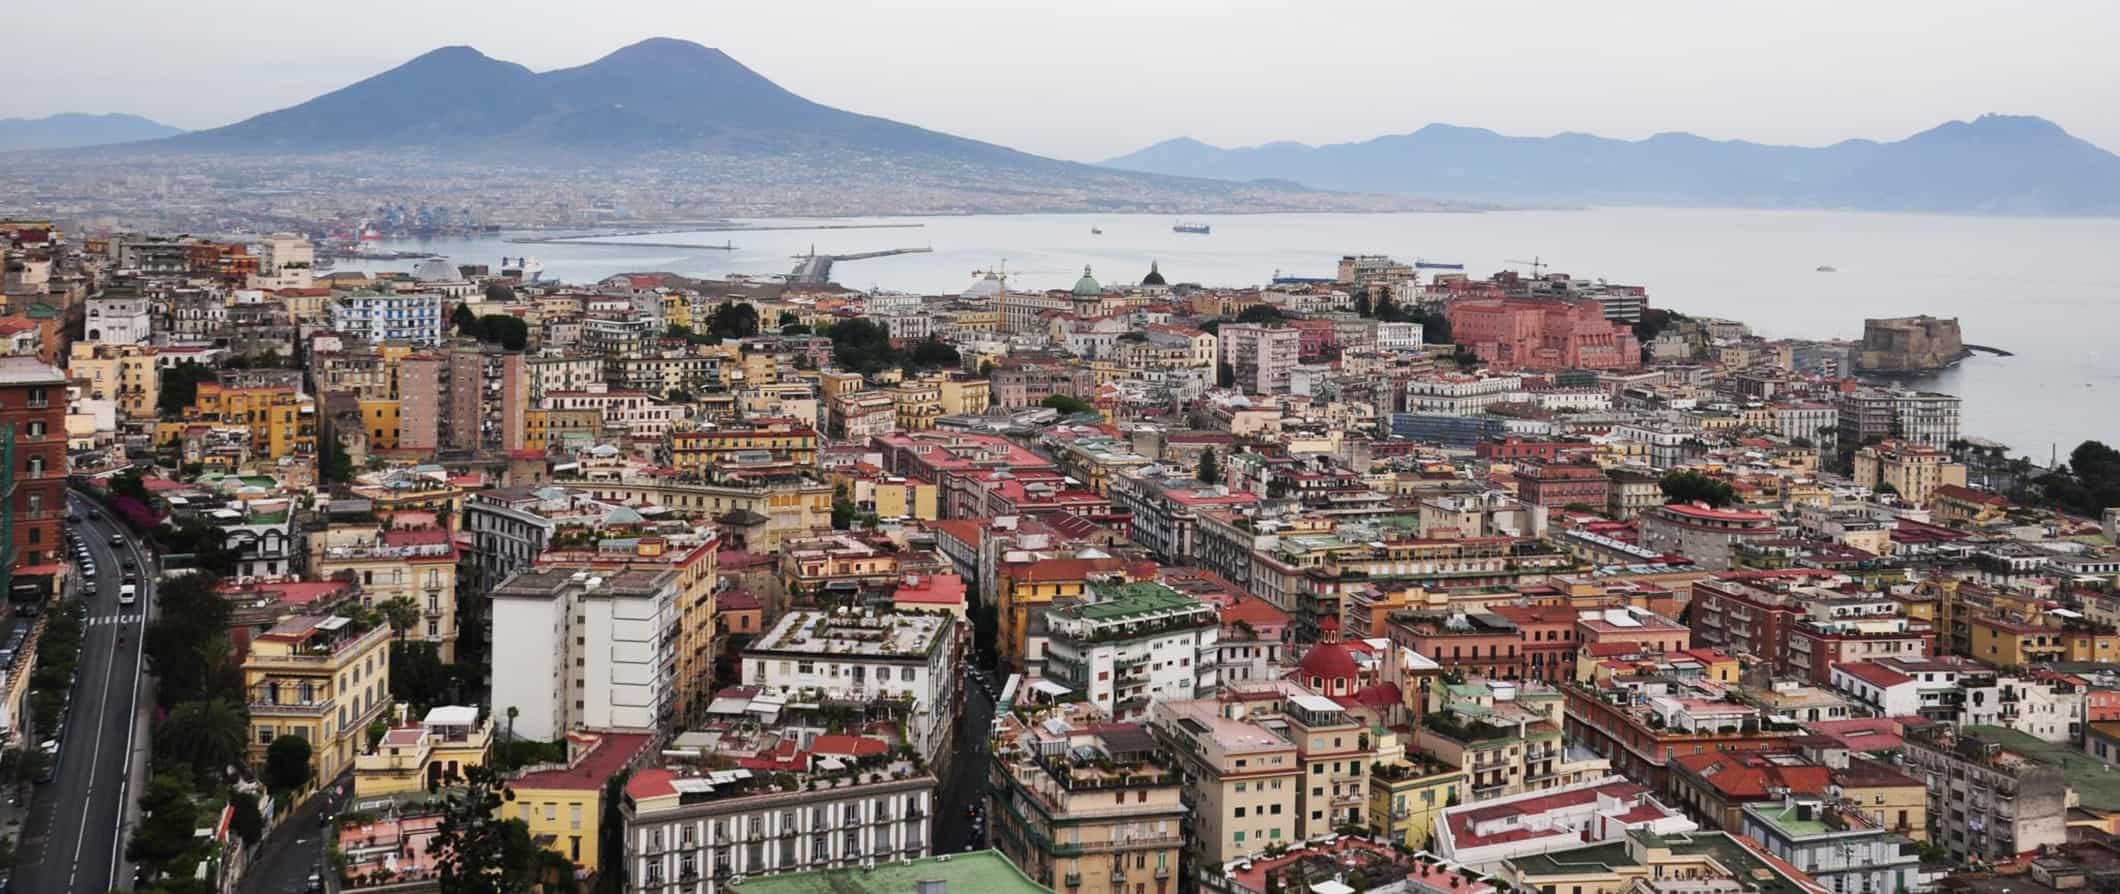 Naples skyline and Mediterranean views